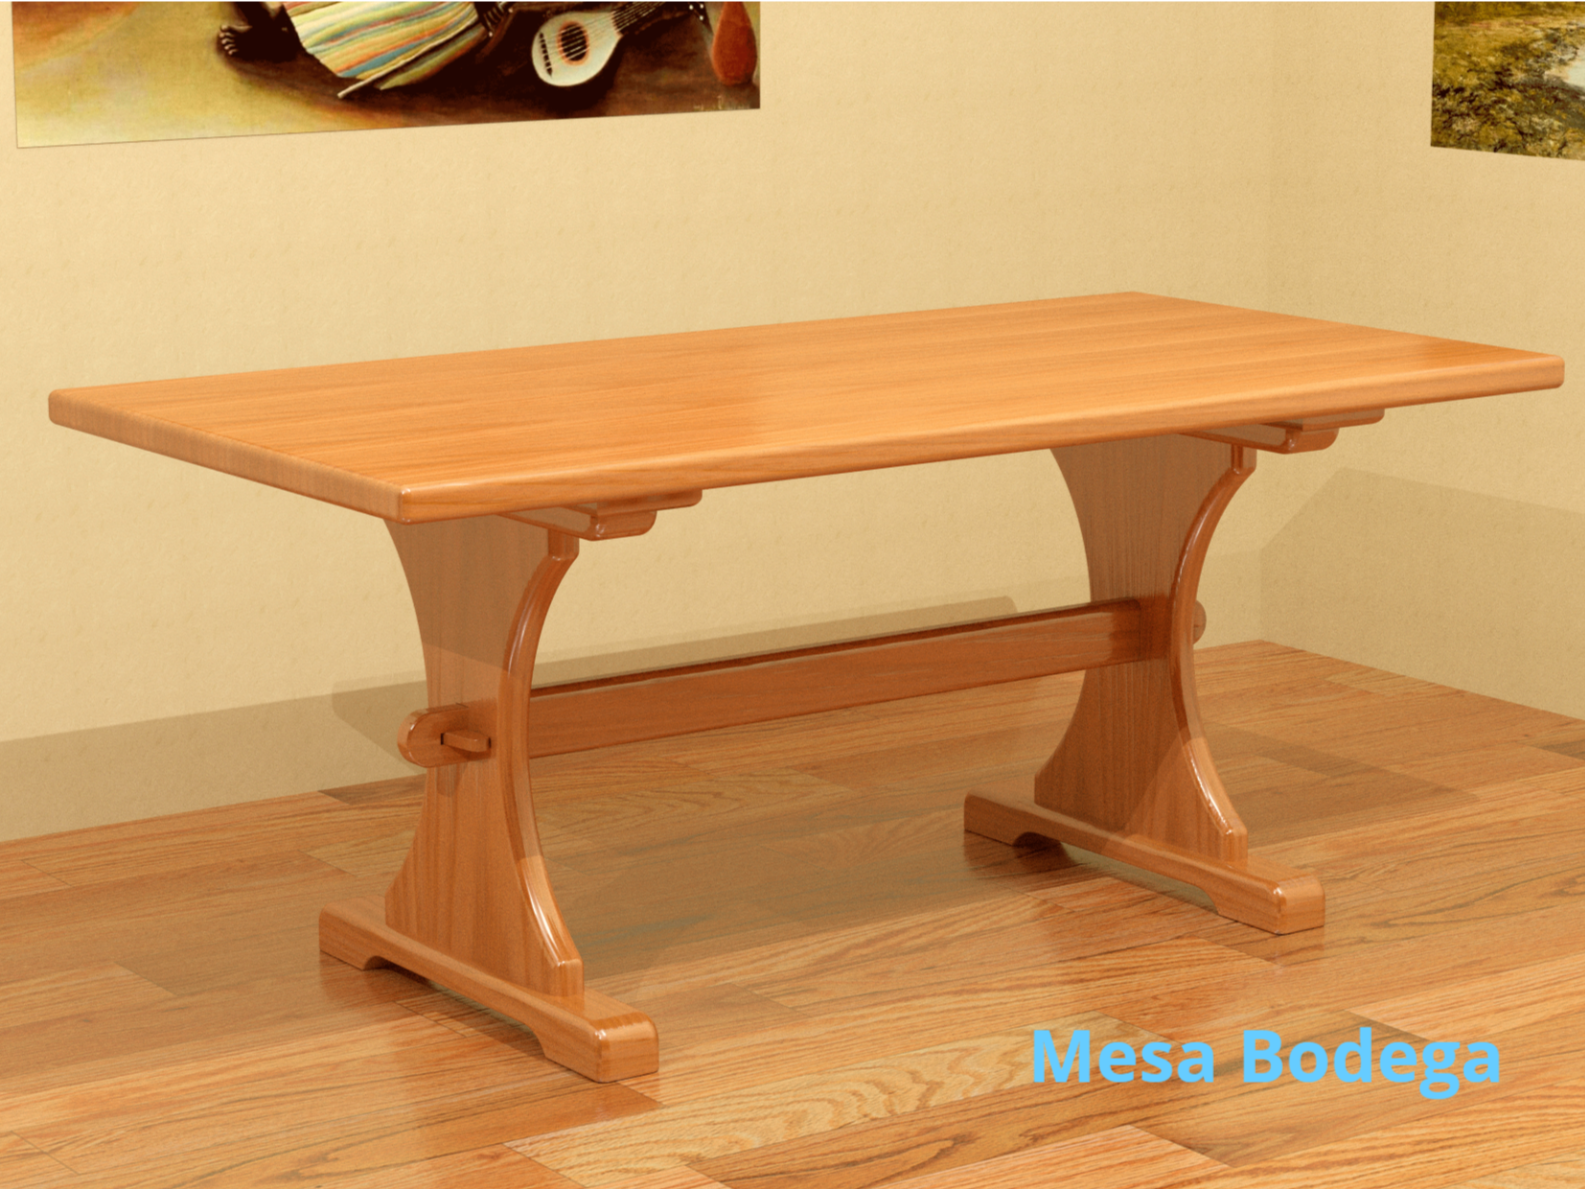 Mesa, mesa bodega, mesa bodega madera maciza, pino, mesa pino, bodega